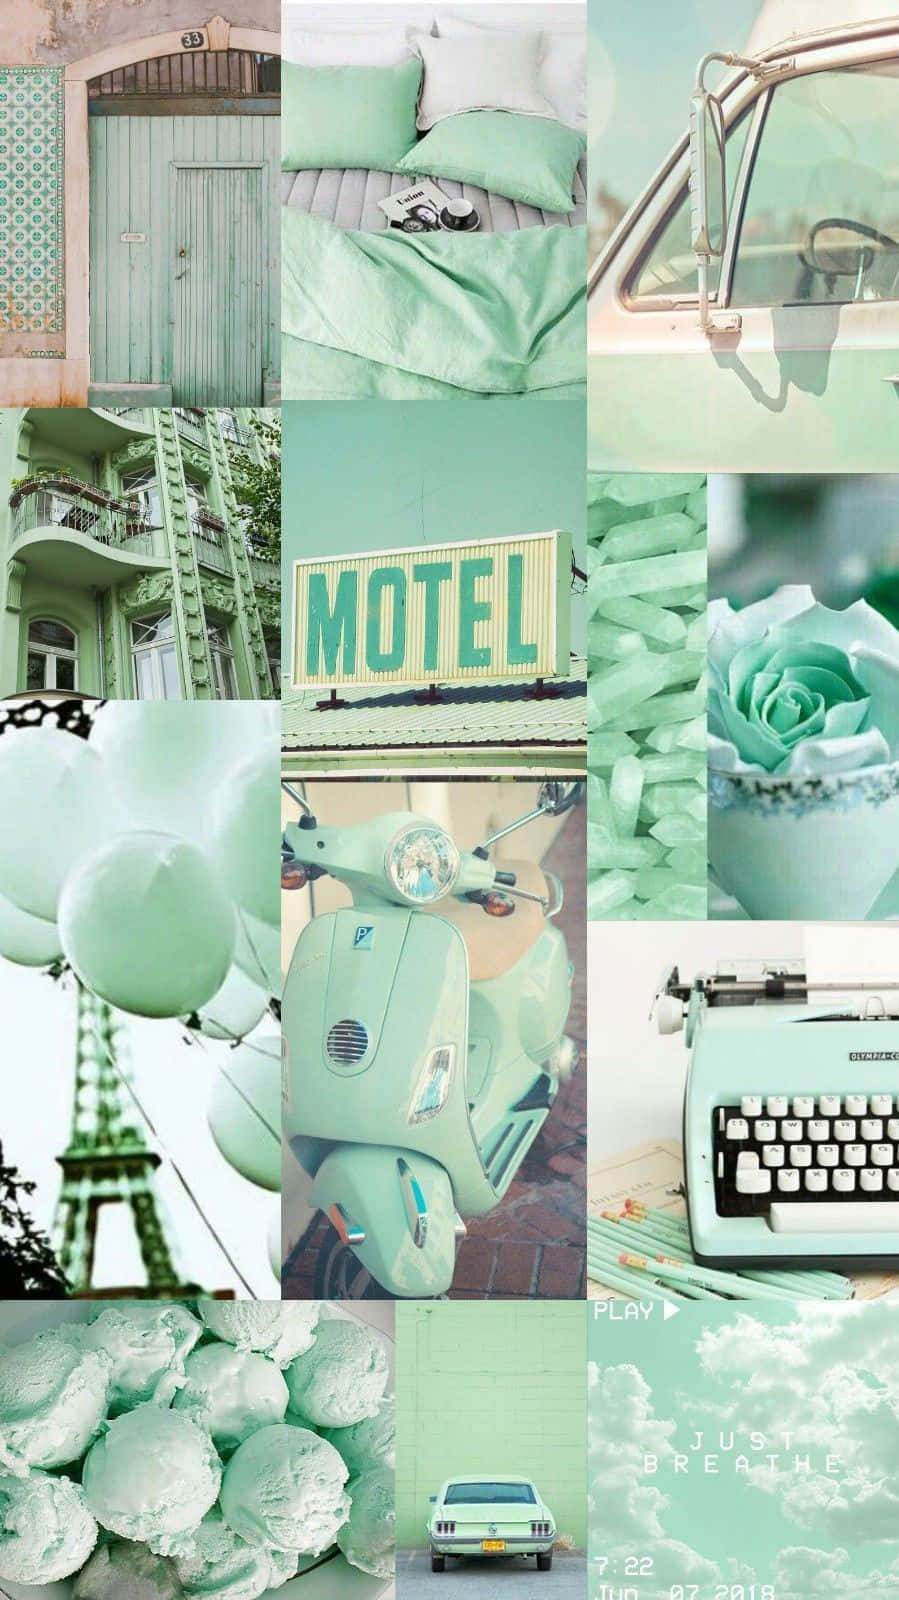 Einecollage Von Bildern Eines Motels, Einer Schreibmaschine Und Einer Schreibmaschine Wallpaper